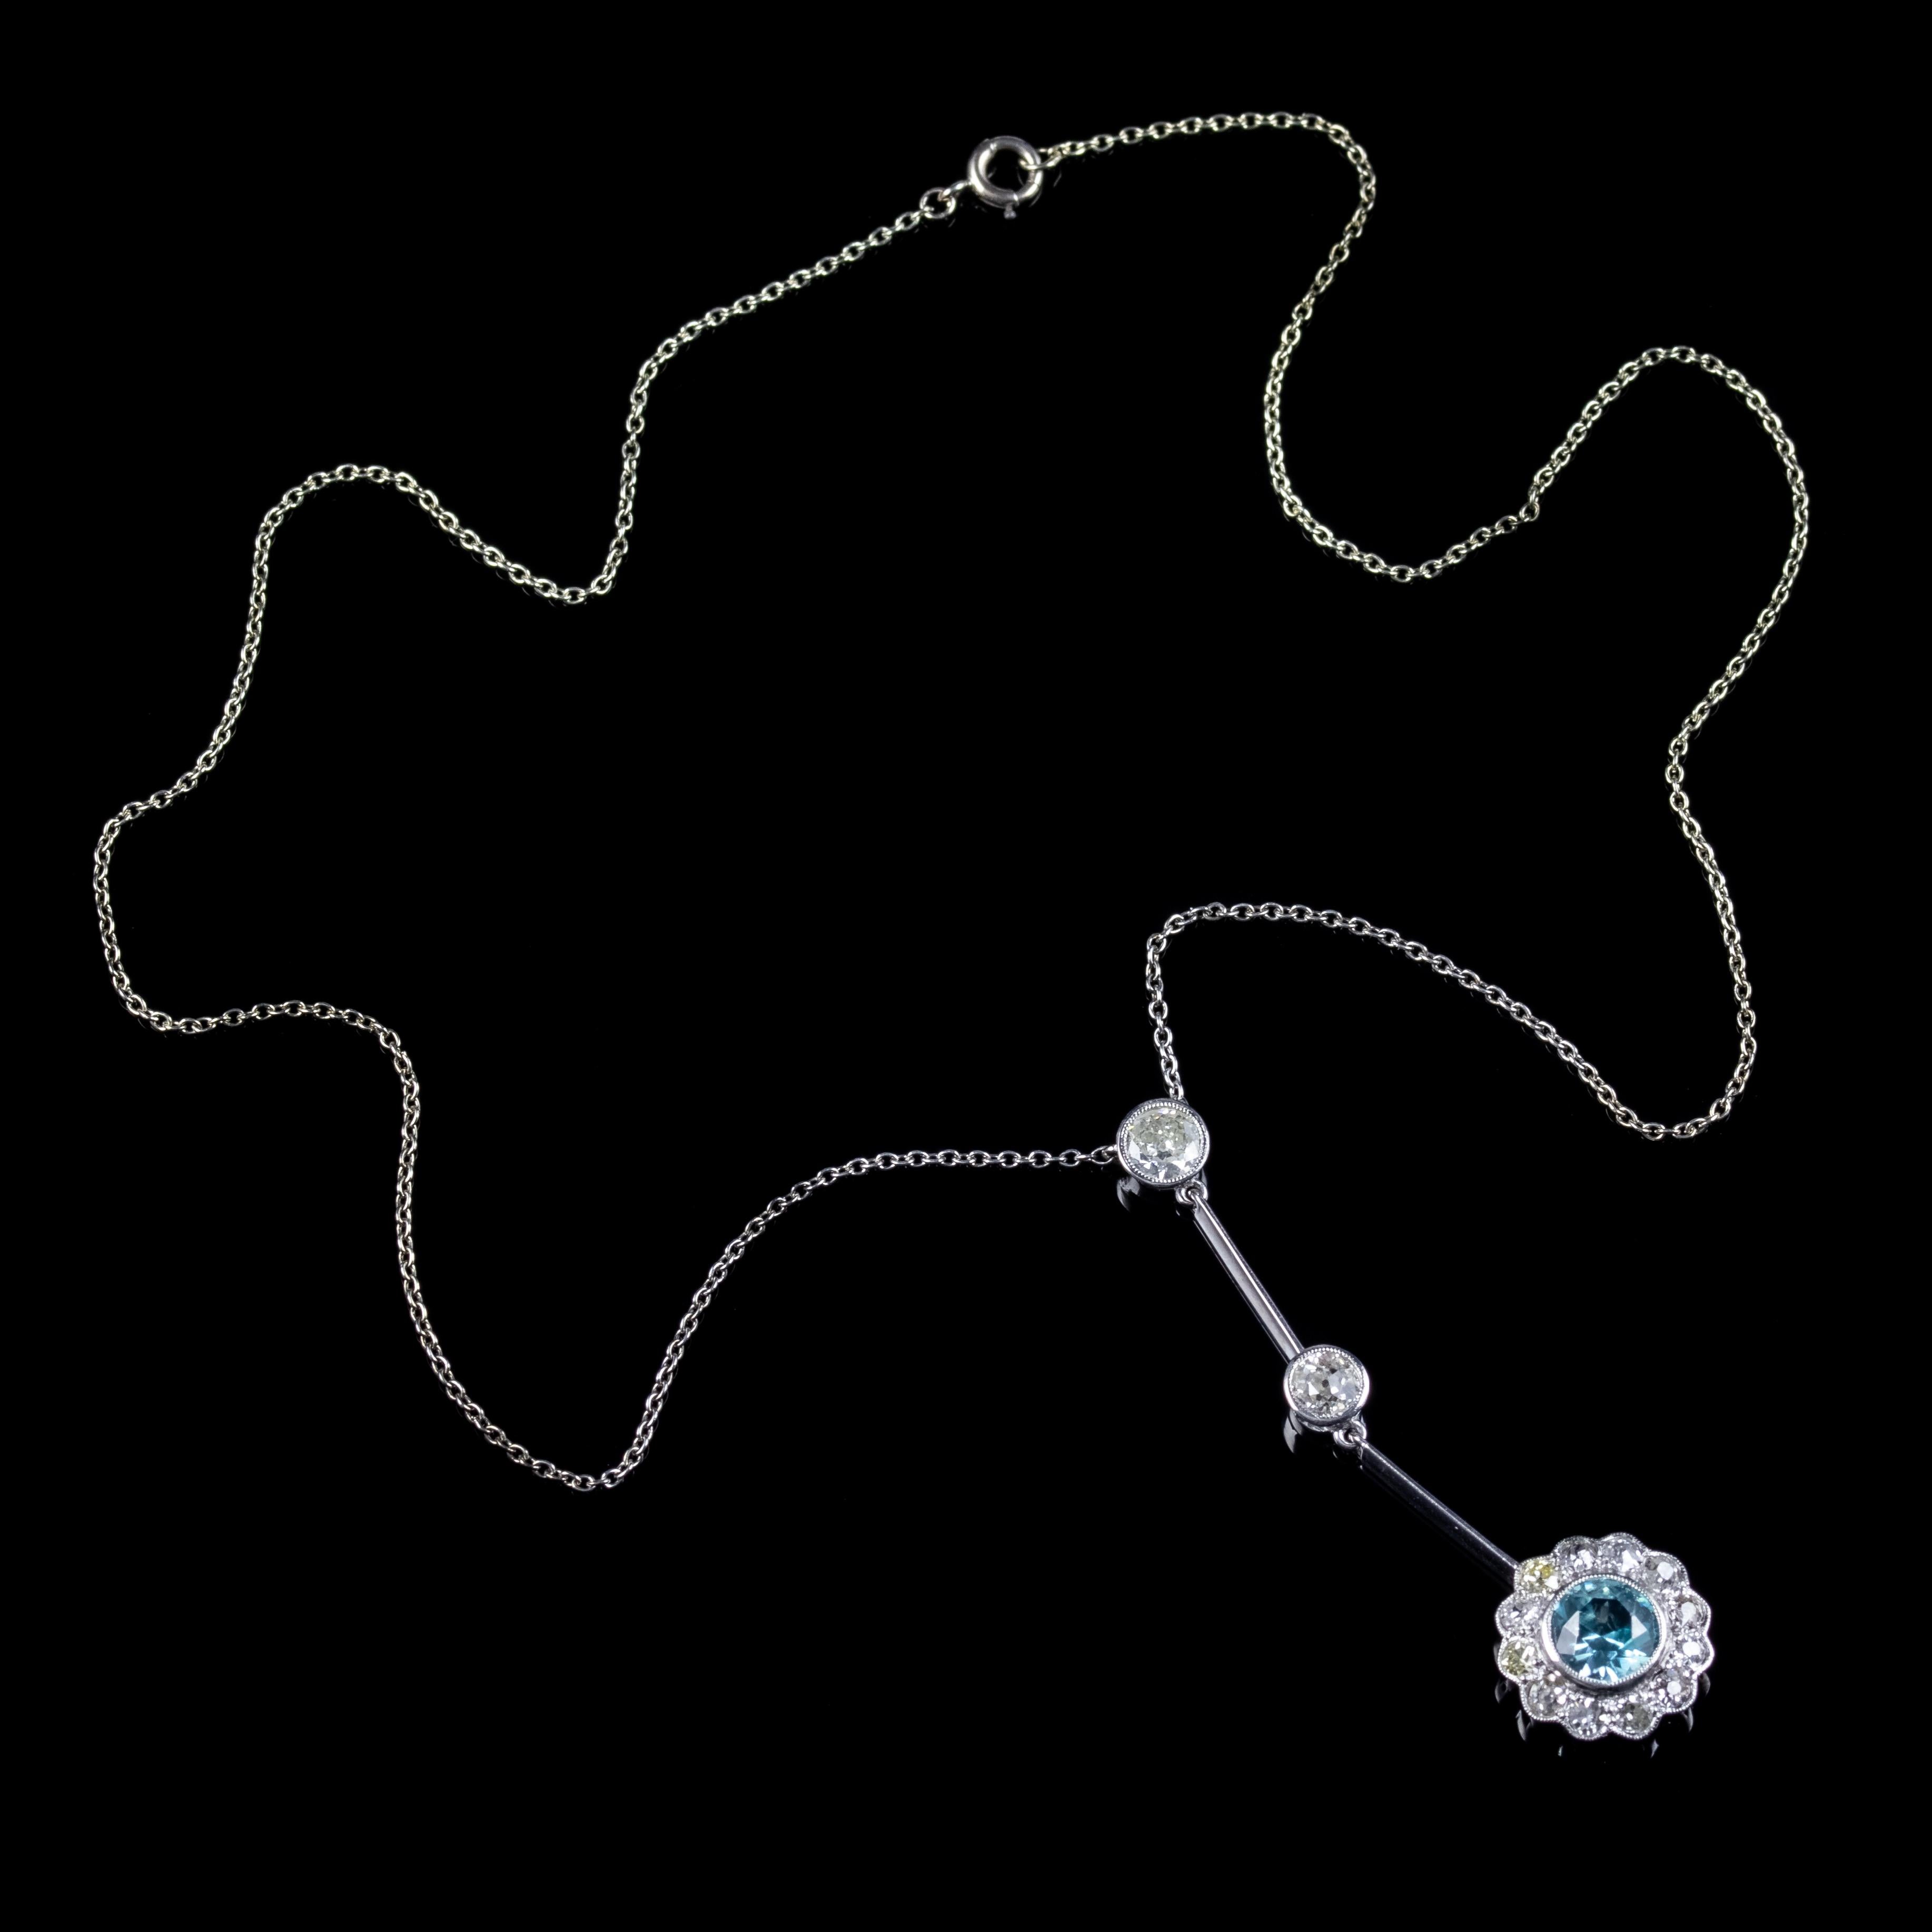 Antique Edwardian Blue Zircon Diamond Lavaliere Necklace Circa 1910 For Sale 1